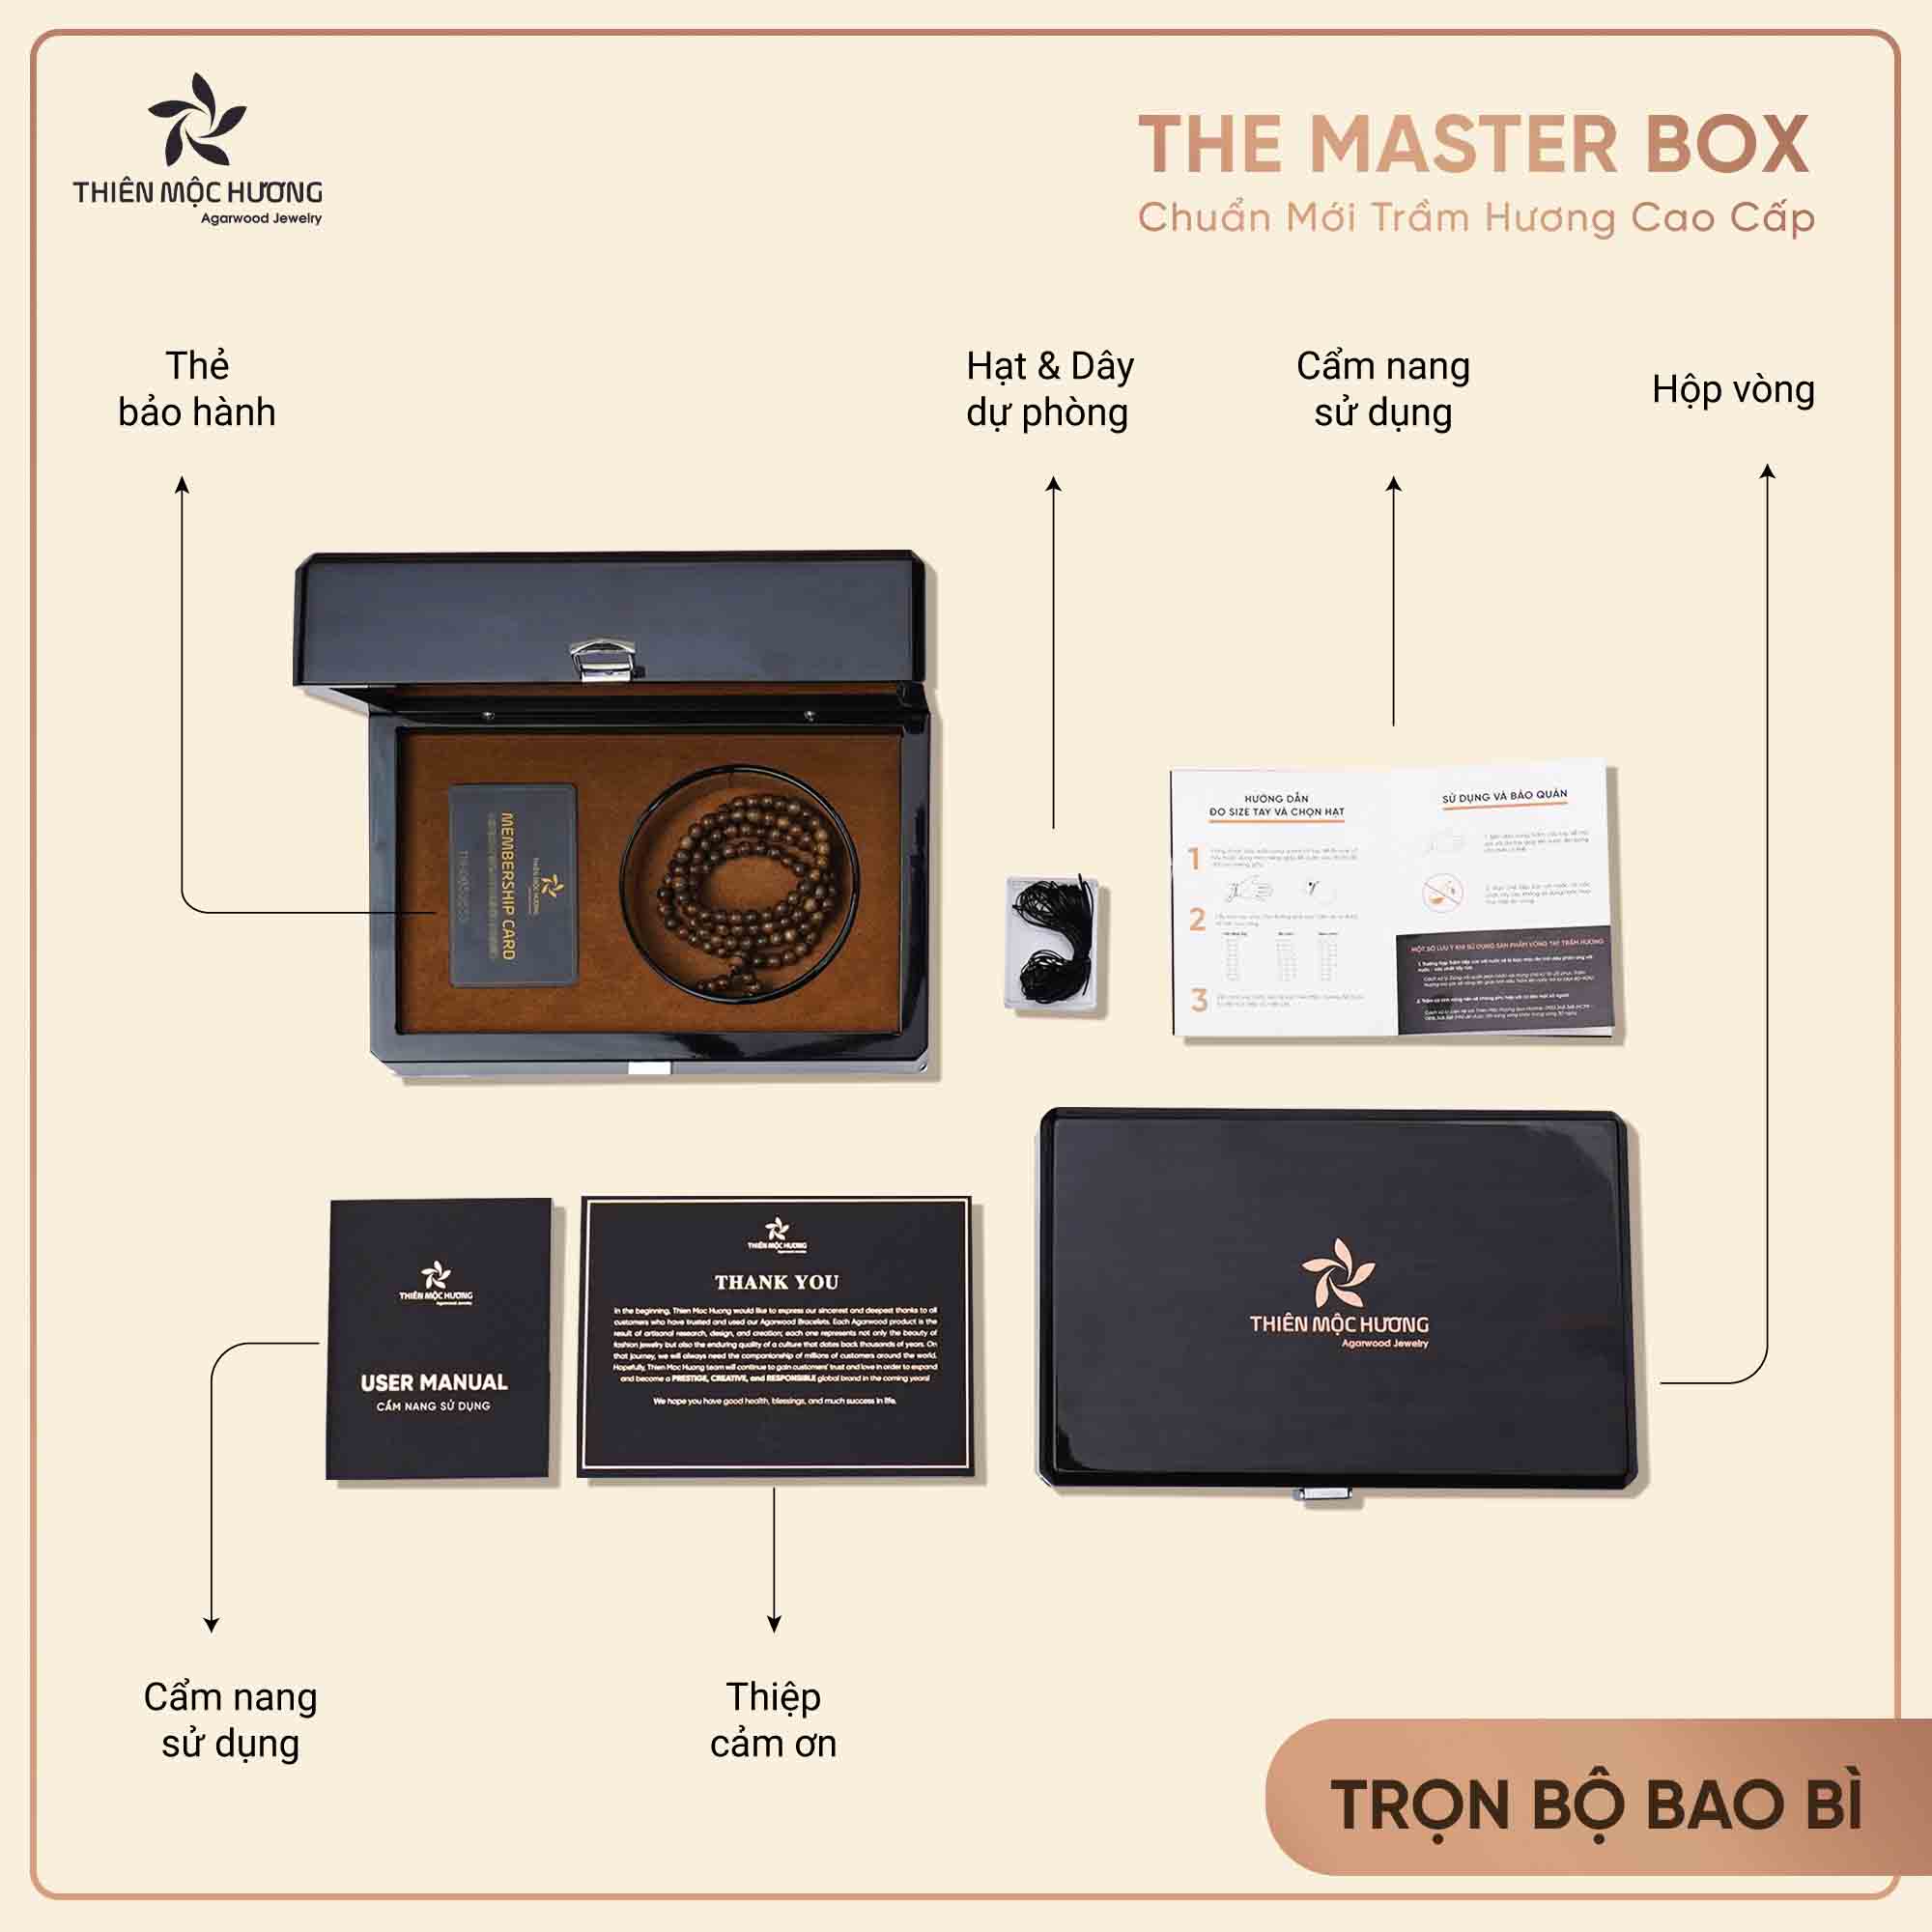 Hình mở hộp The Master Box